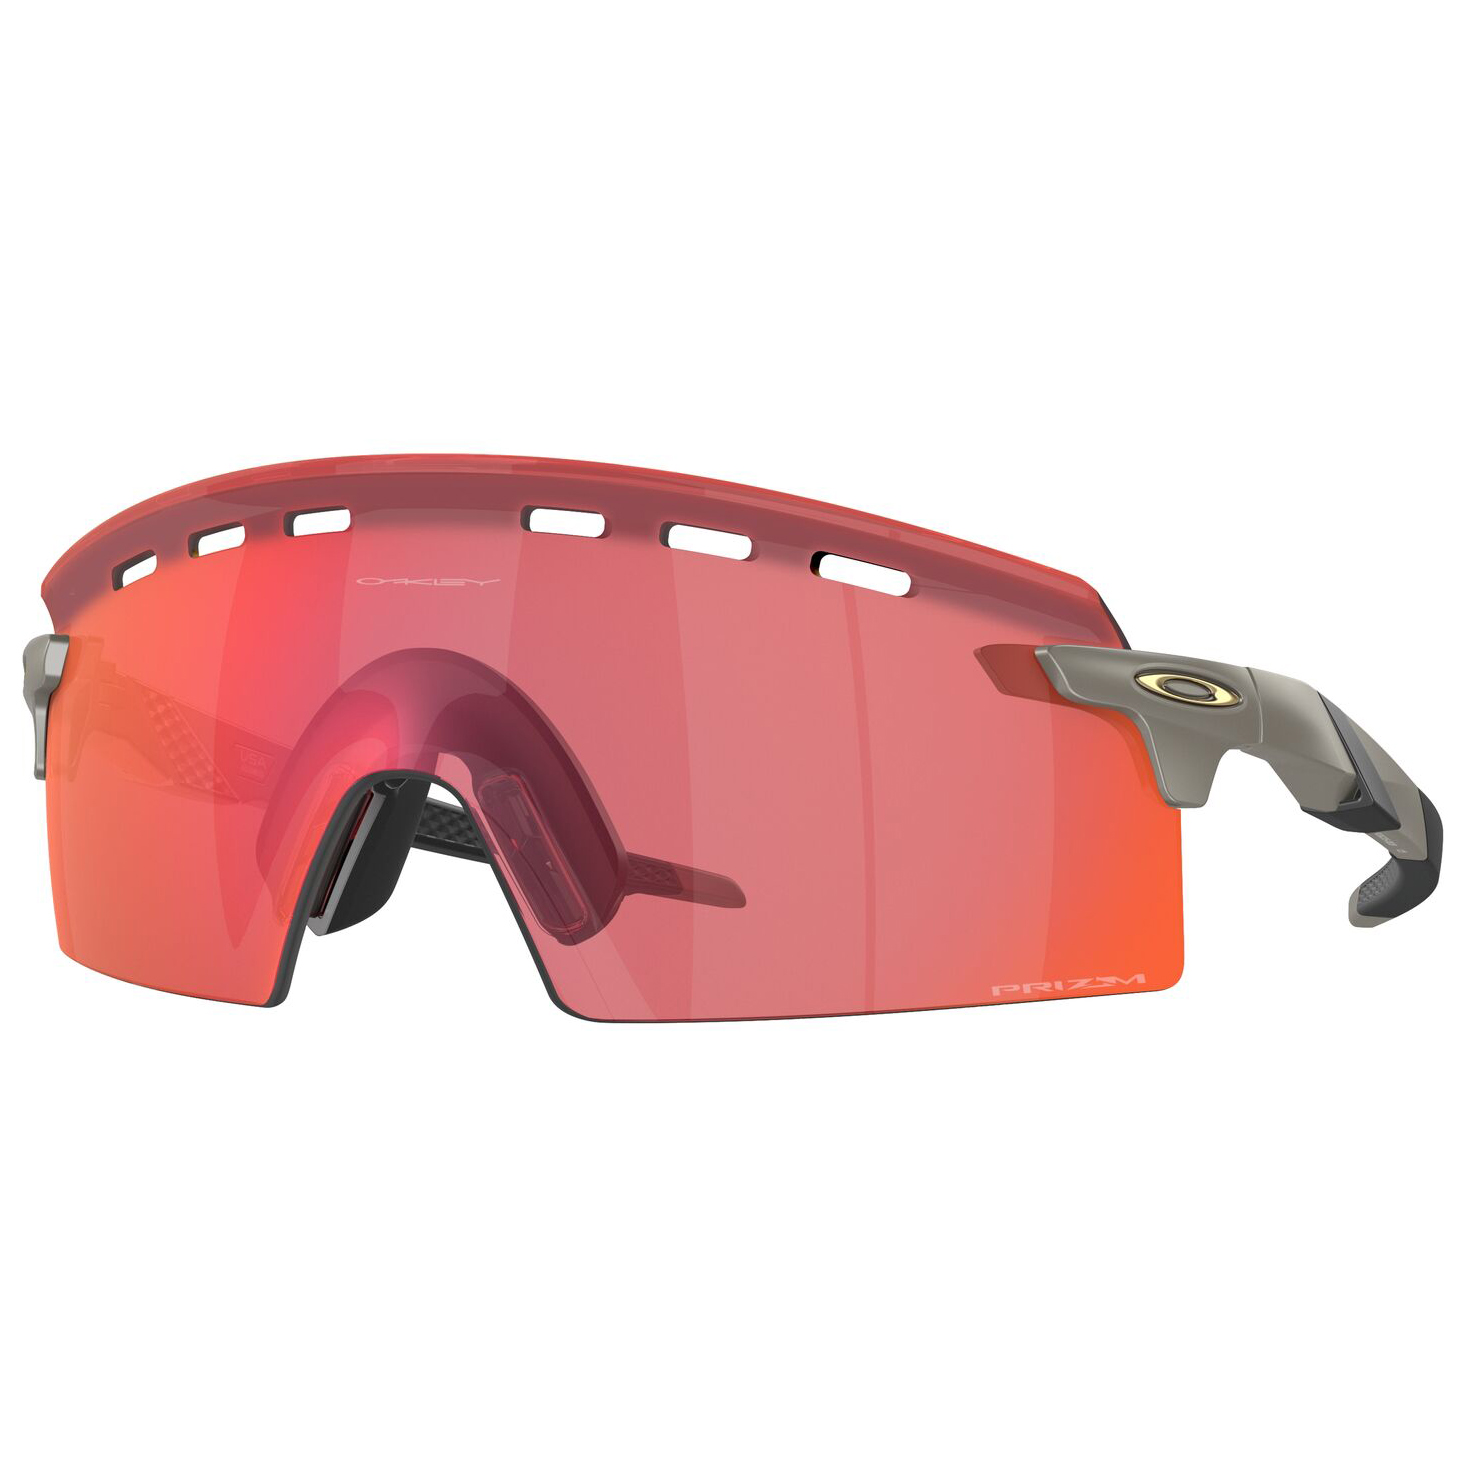 Велосипедные очки Oakley Encoder Strike Vented S3 (VLT 11%), матовый карбон